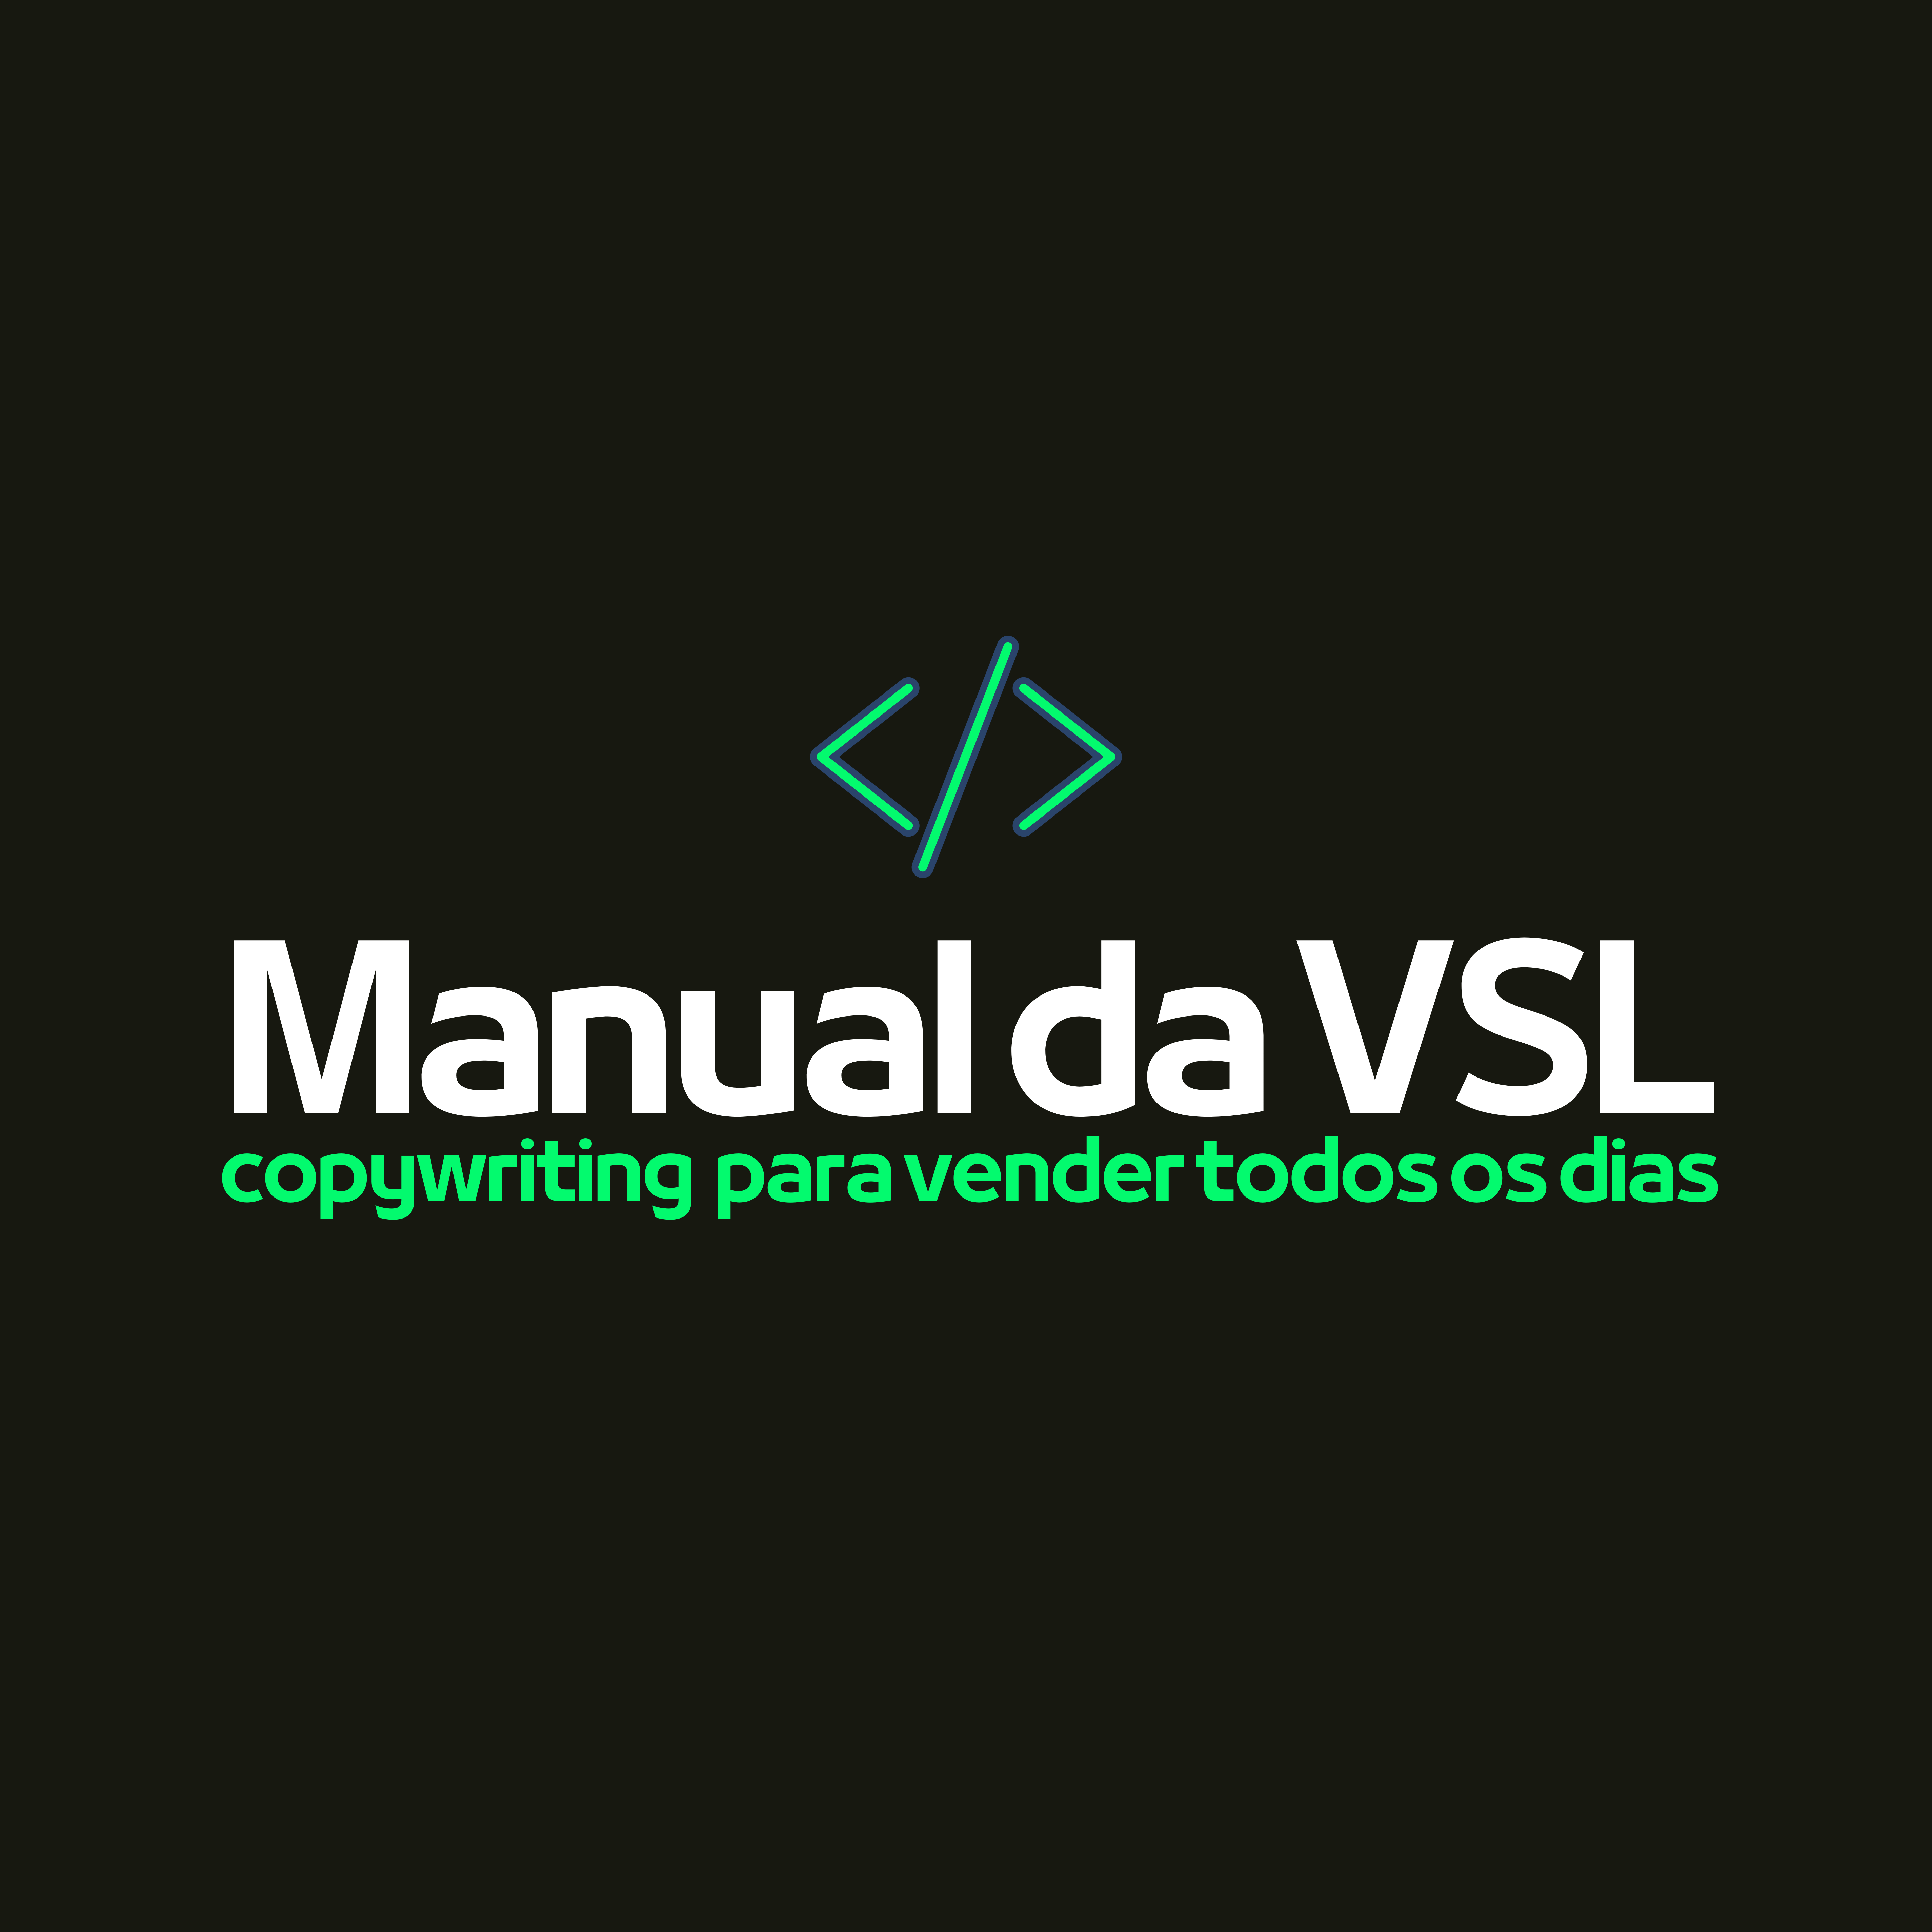 Manual da VSL (Vídeo Sales Letter) - Ebook Completo 46